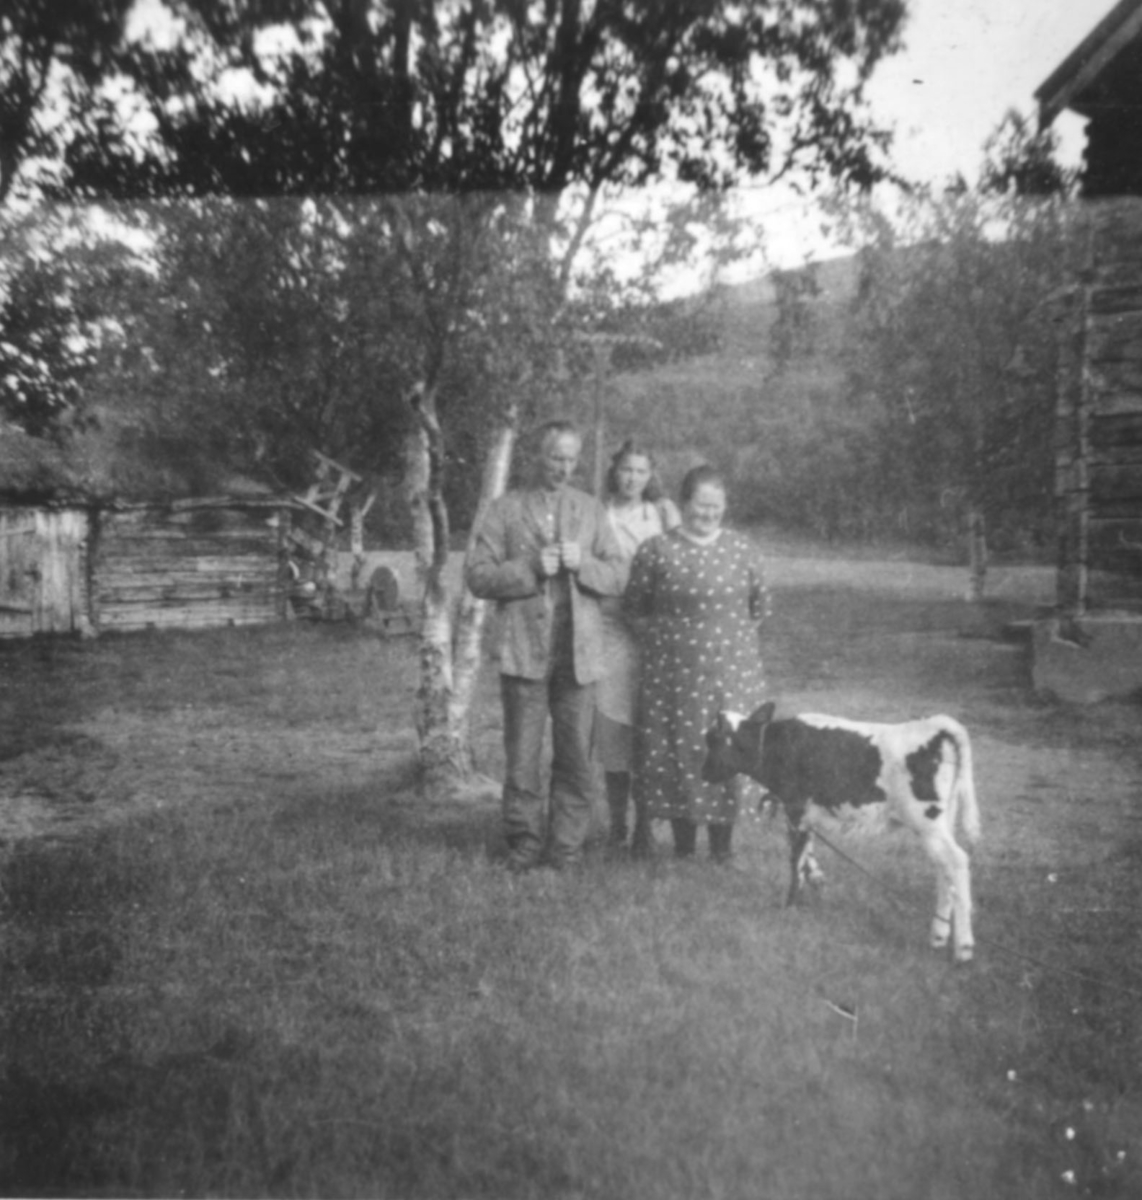 "Aina Marie Aronsen i Luftjok med besøkende og kalven. Bildet er tatt ca. 1935. Gjestfriheten var spesielt stor hos Aronsen." Tømmerhuset til høyre huset også Luftjok skole på den tiden.